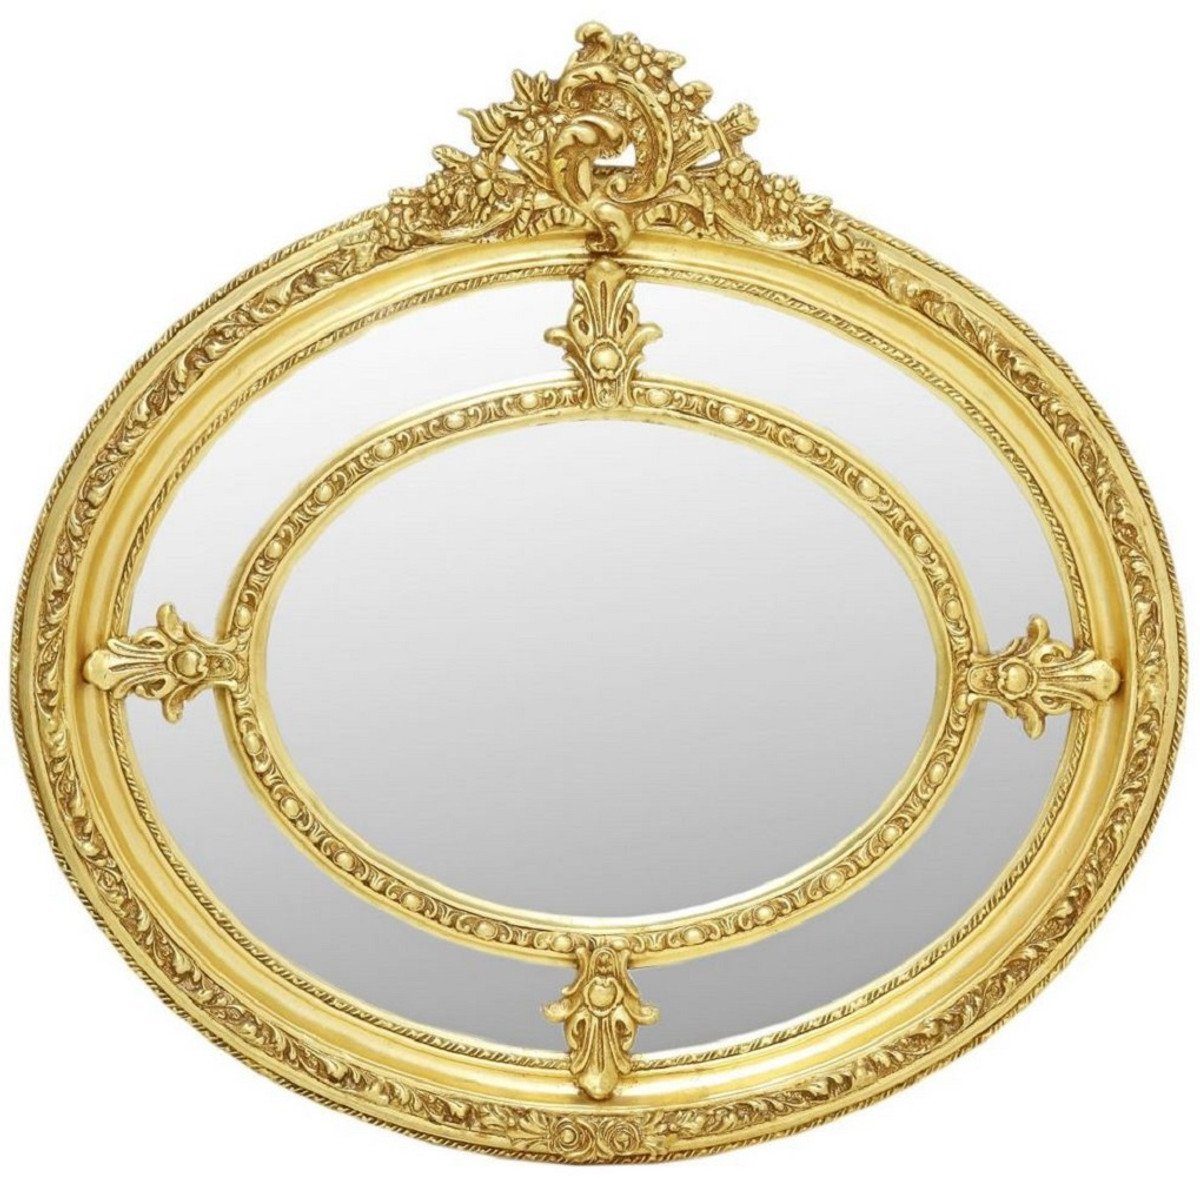 Casa Padrino Barockspiegel Barock Spiegel Gold - Ovaler Antik Stil Wandspiegel - Wohnzimmer Spiegel - Garderoben Spiegel - Barock Möbel